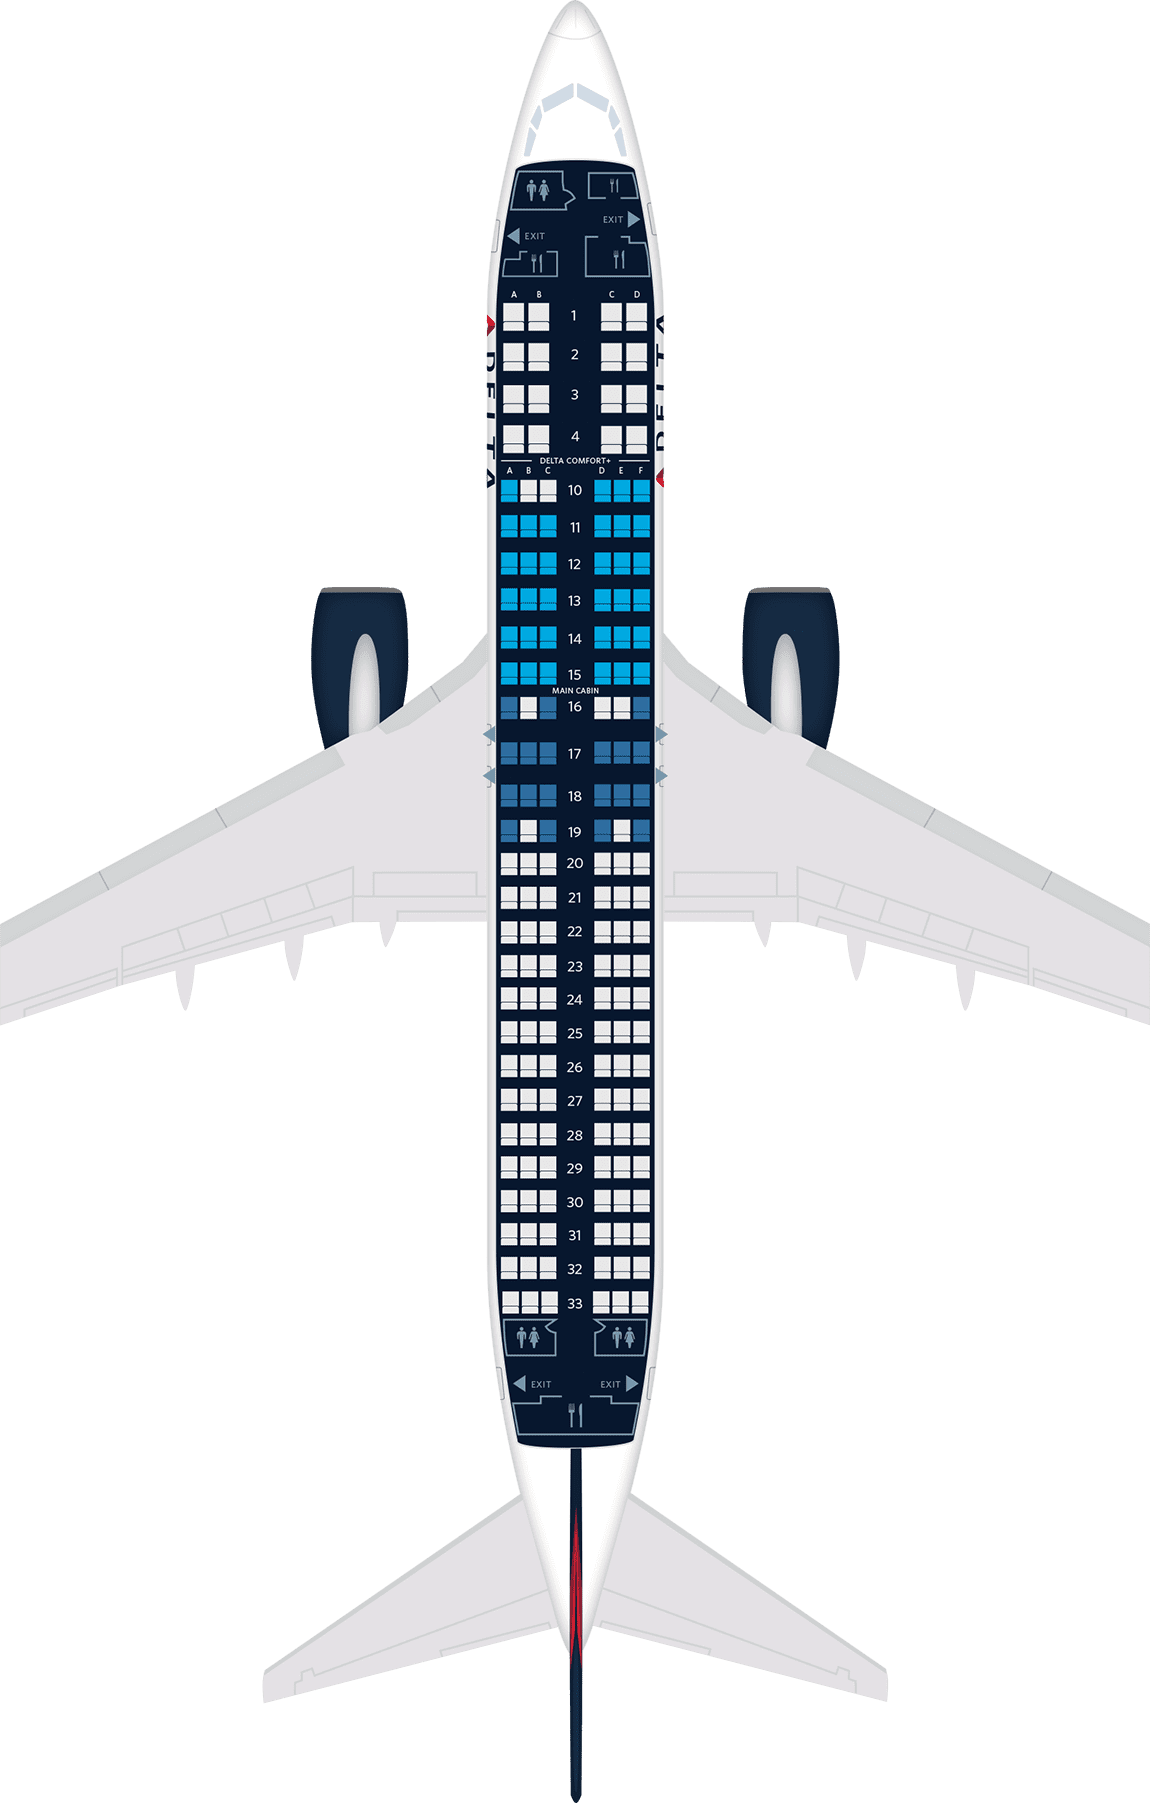 波音737-800飞机座位地图,规格和服务设施:达美航空公司